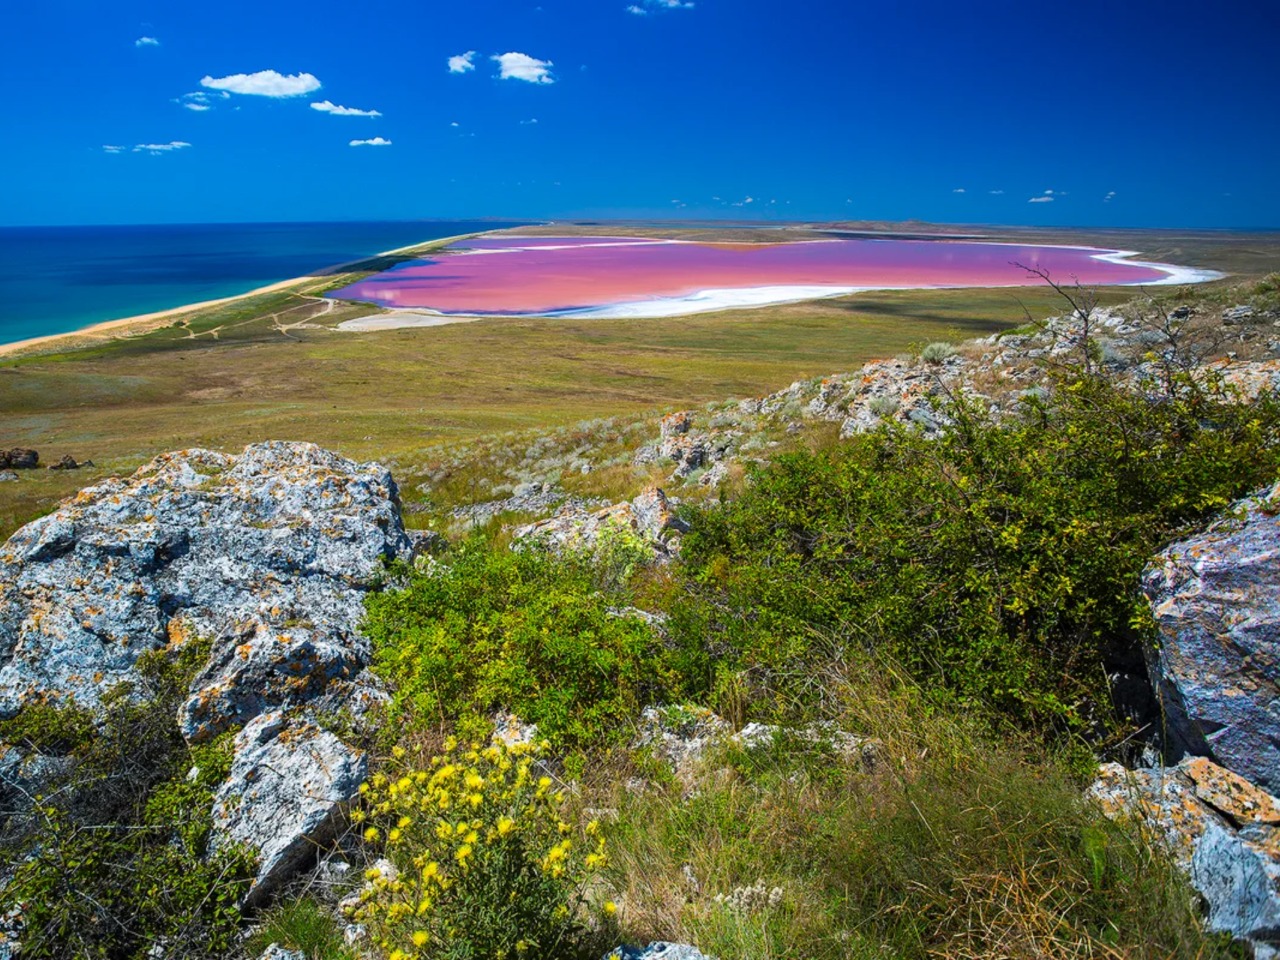 Кояшское озеро — розовая жемчужина Крыма | Цена 10200₽, отзывы, описание экскурсии